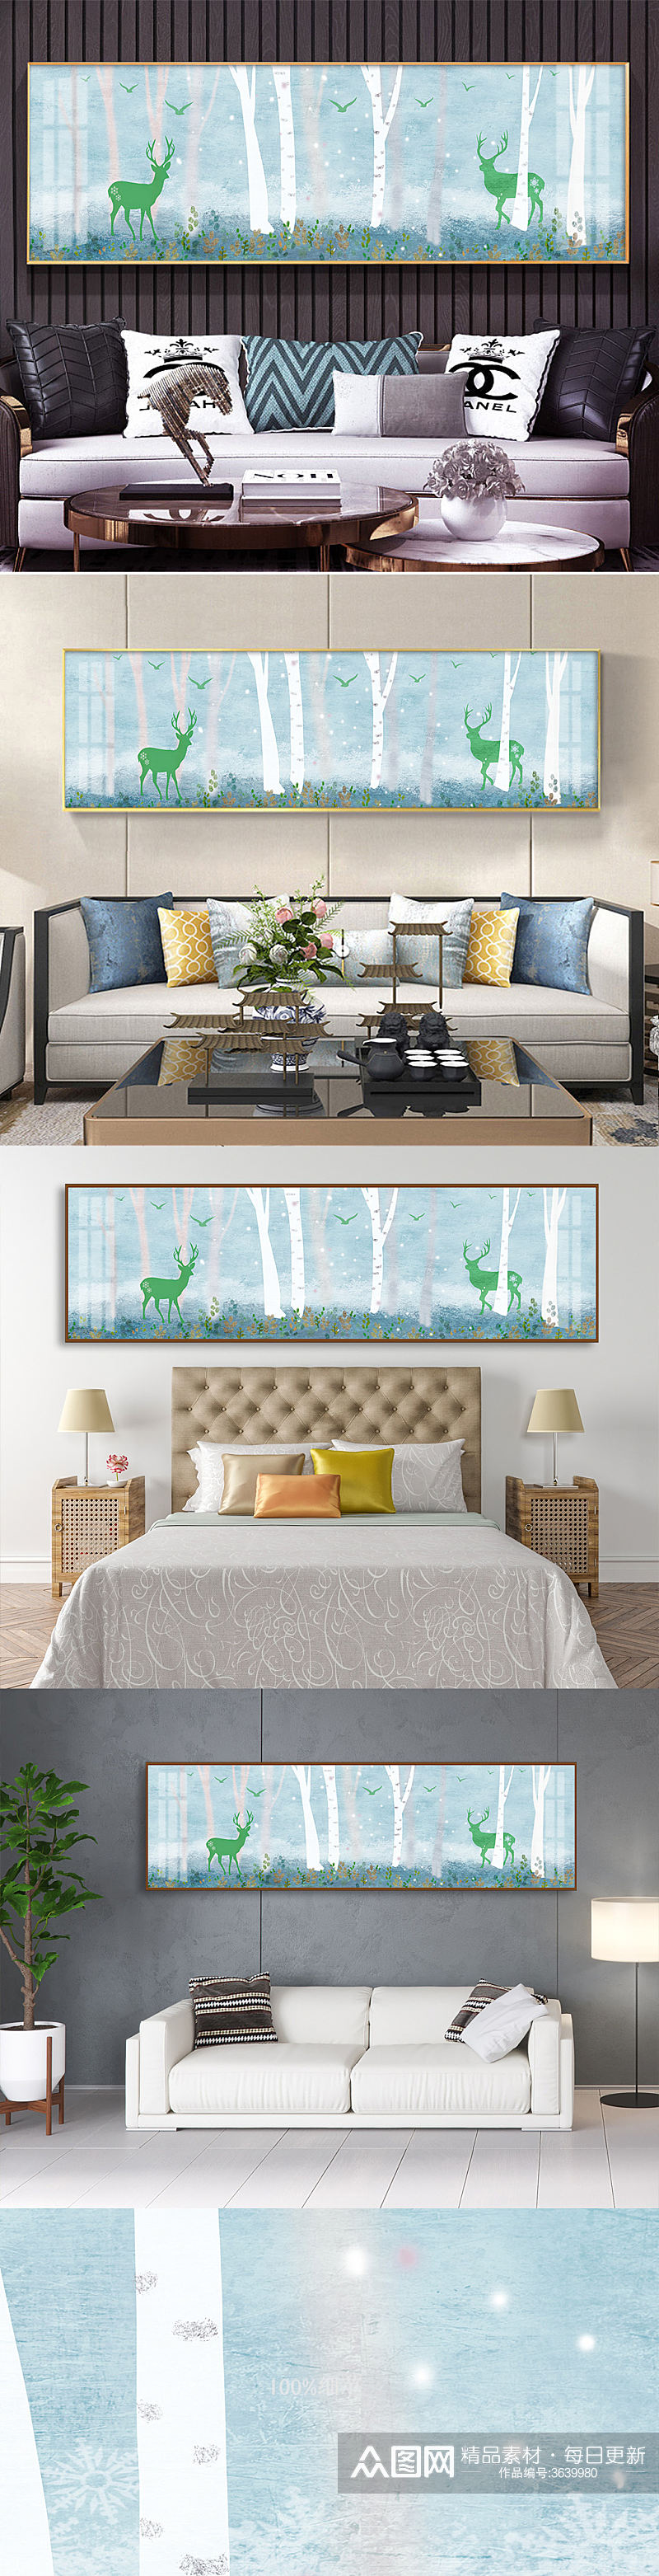 欧式森林麋鹿装饰画素材